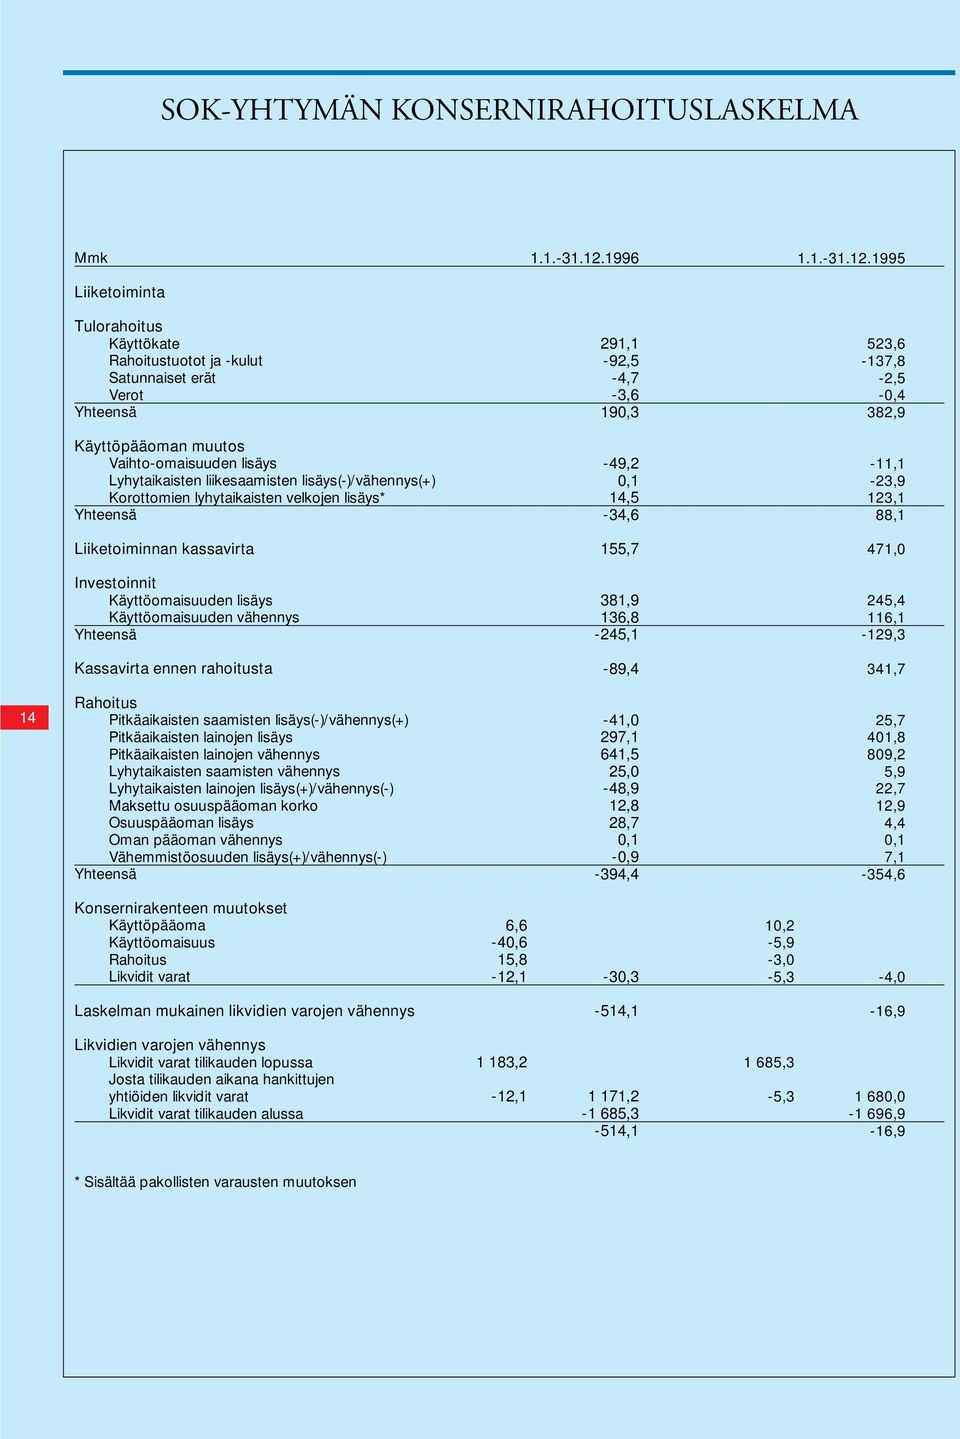 1995 Liiketoiminta 14 Tulorahoitus Käyttökate Rahoitustuotot ja -kulut Satunnaiset erät Verot Käyttöpääoman muutos Vaihto-omaisuuden lisäys Lyhytaikaisten liikesaamisten lisäys(-)/vähennys(+)